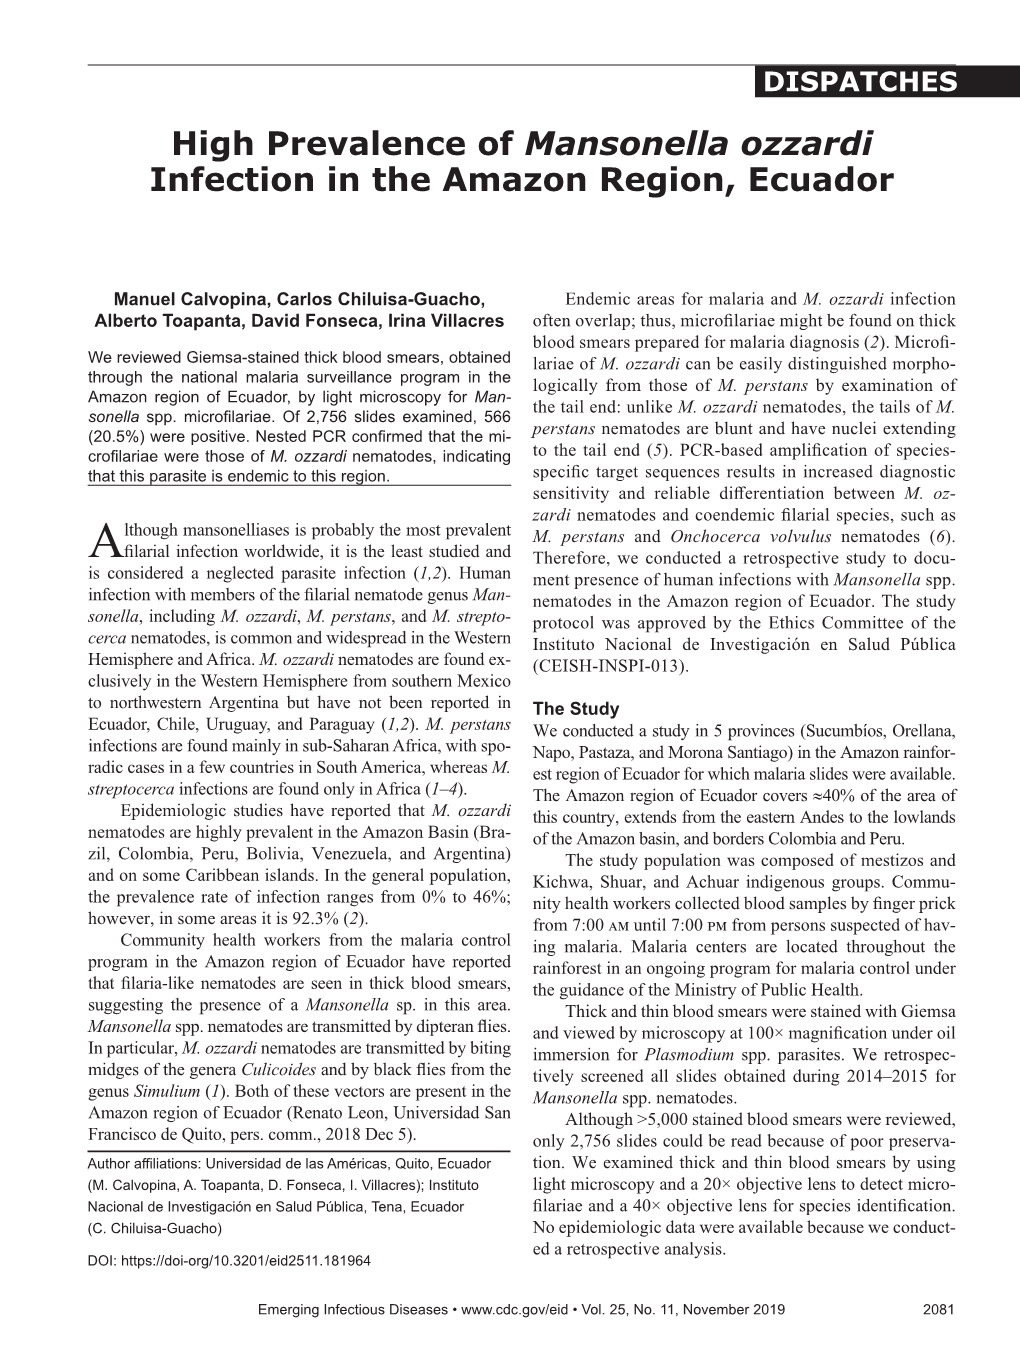 High Prevalence of Mansonella Ozzardi Infection in the Amazon Region, Ecuador